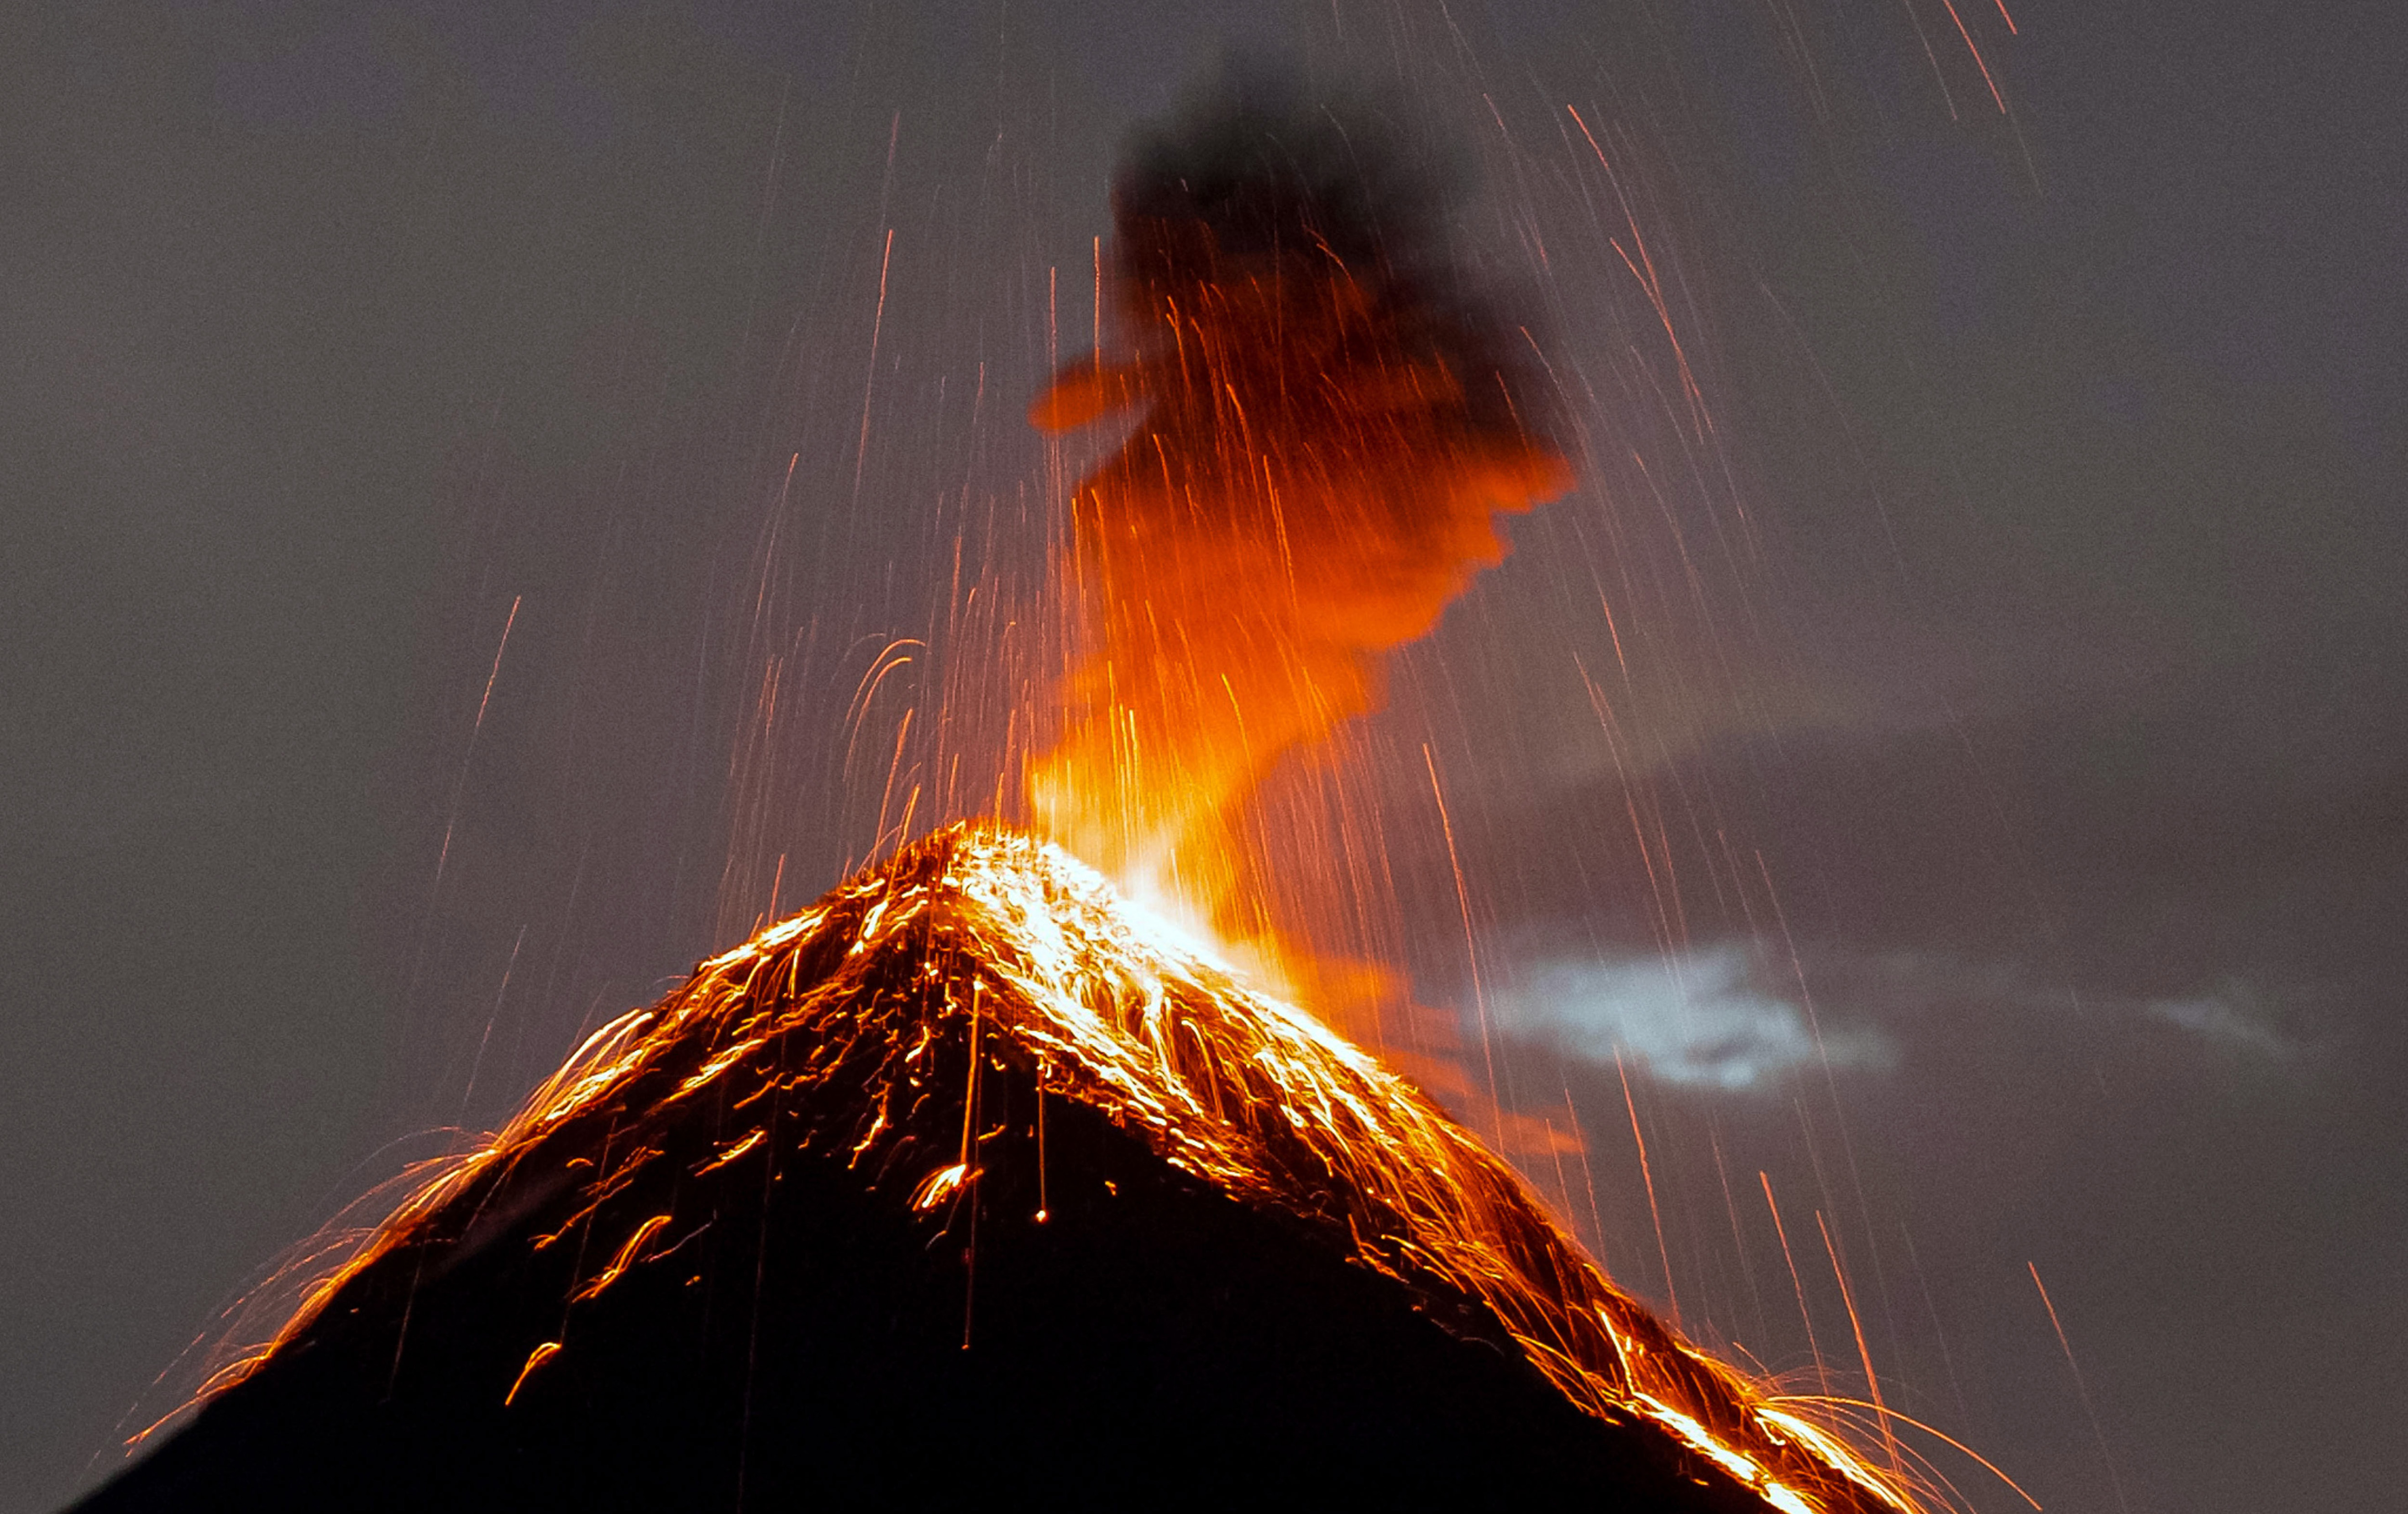 震撼摄影师近距离拍摄富埃戈火山喷发瞬间